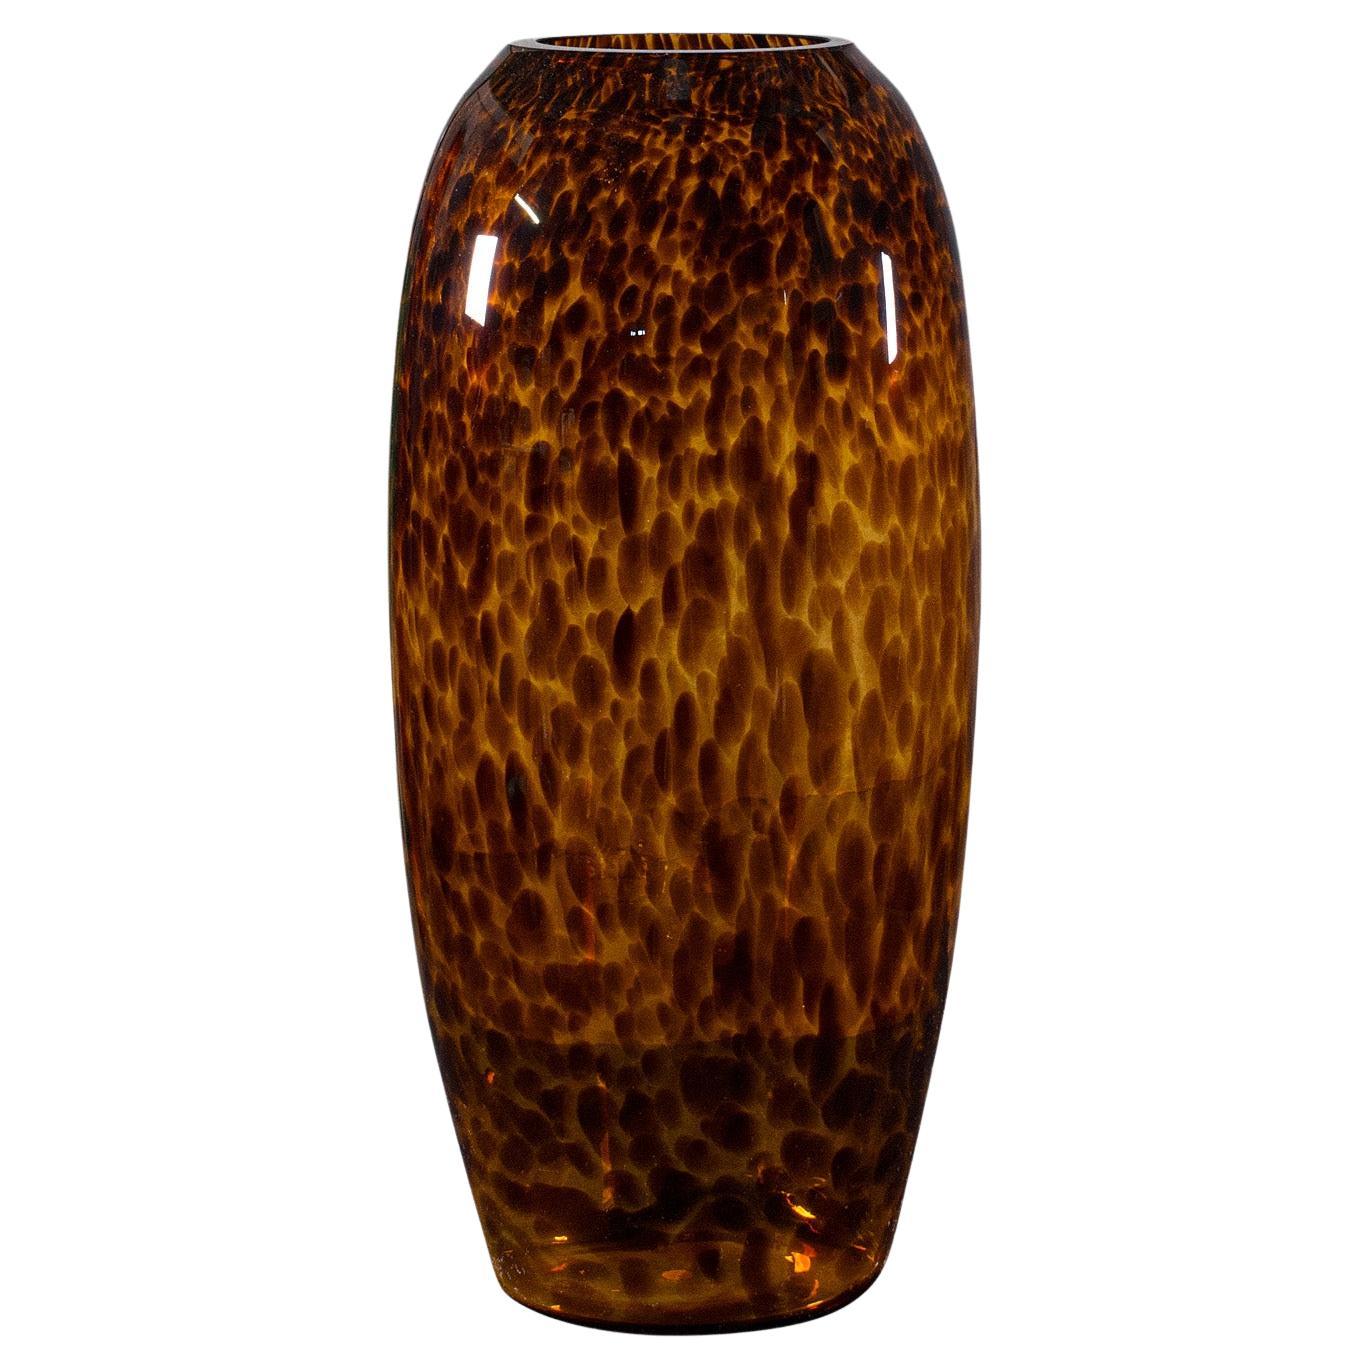 Tall Vintage Amber Vase, Italian, Art Glass, Flower Sleeve, Decorative, C.1970